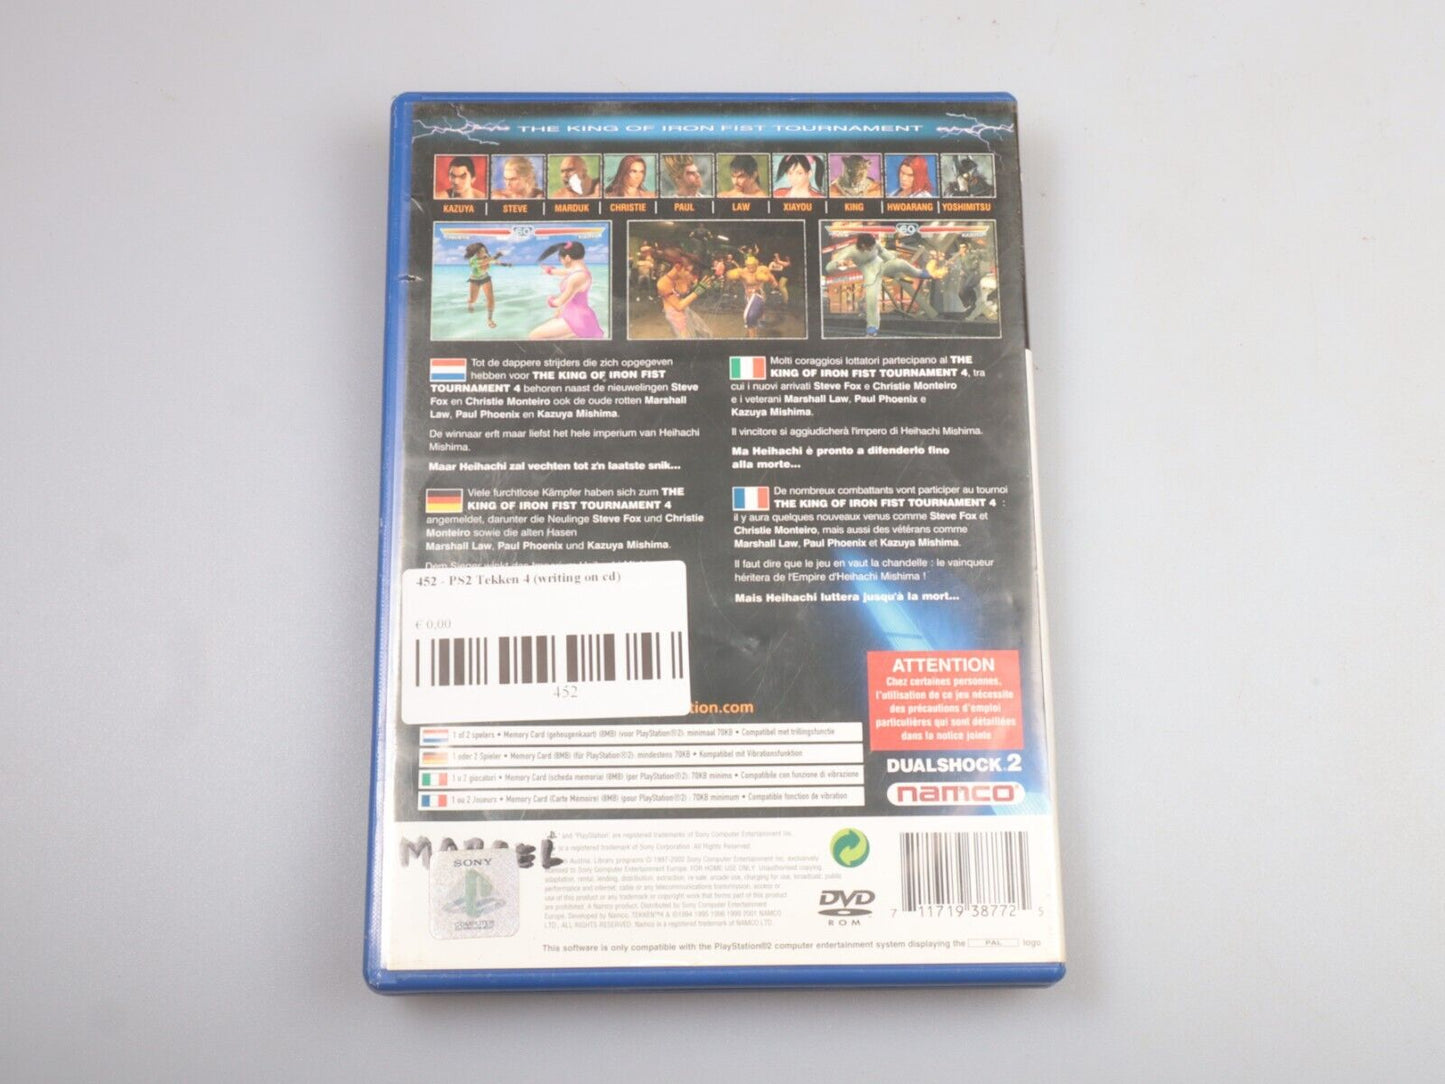 PS2 | Tekken 4 (schrijven op cd) 